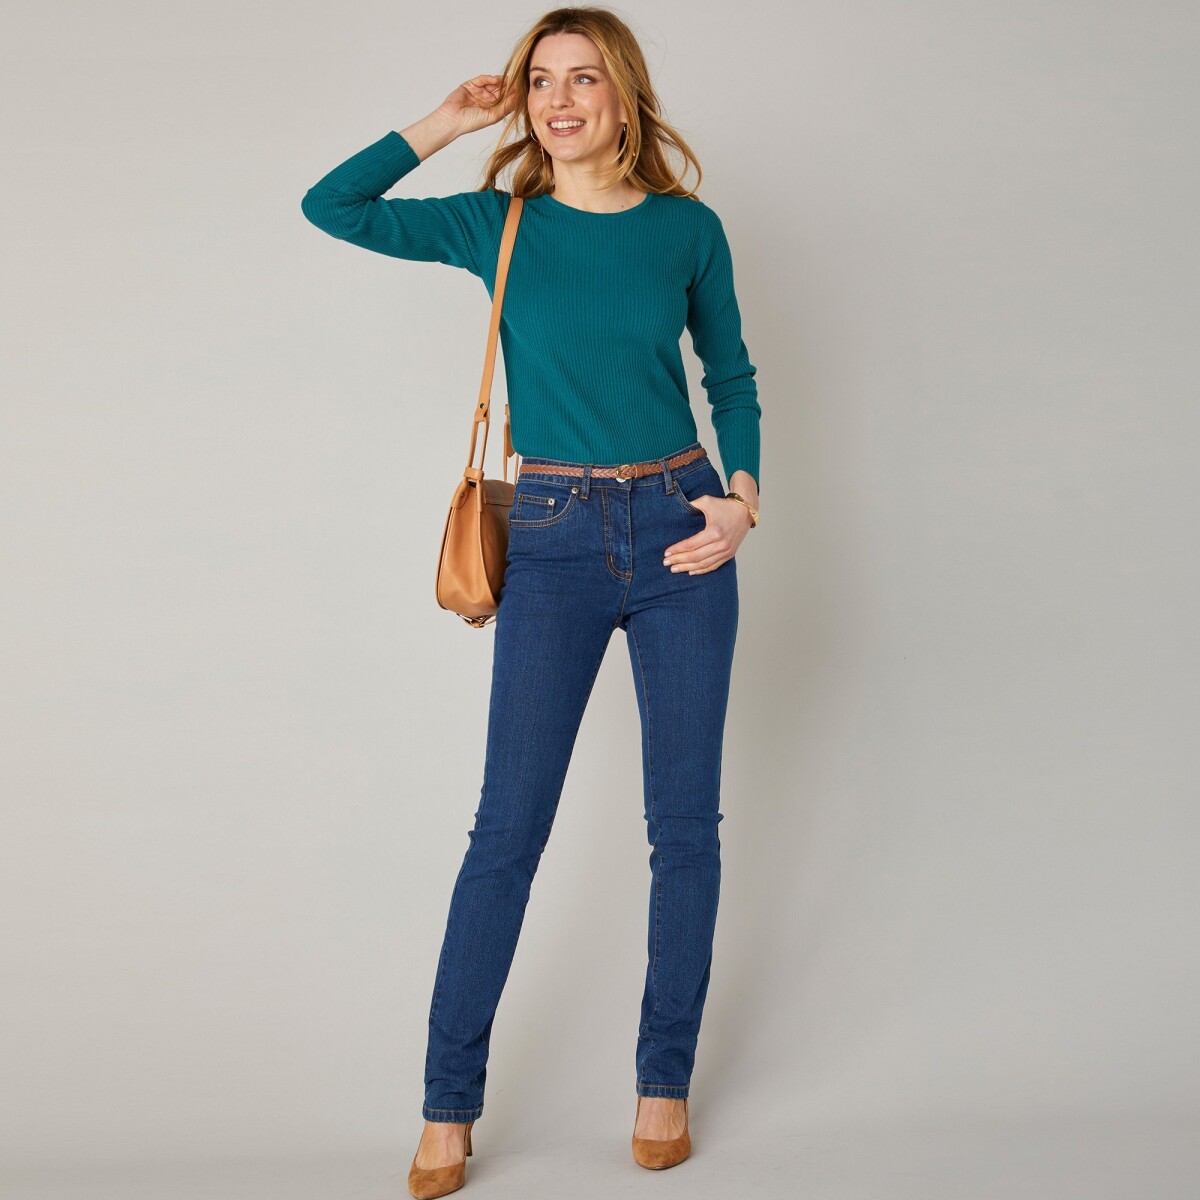 Blancheporte Strečové rovné džíny, střední výška postavy tmavě modrá 46